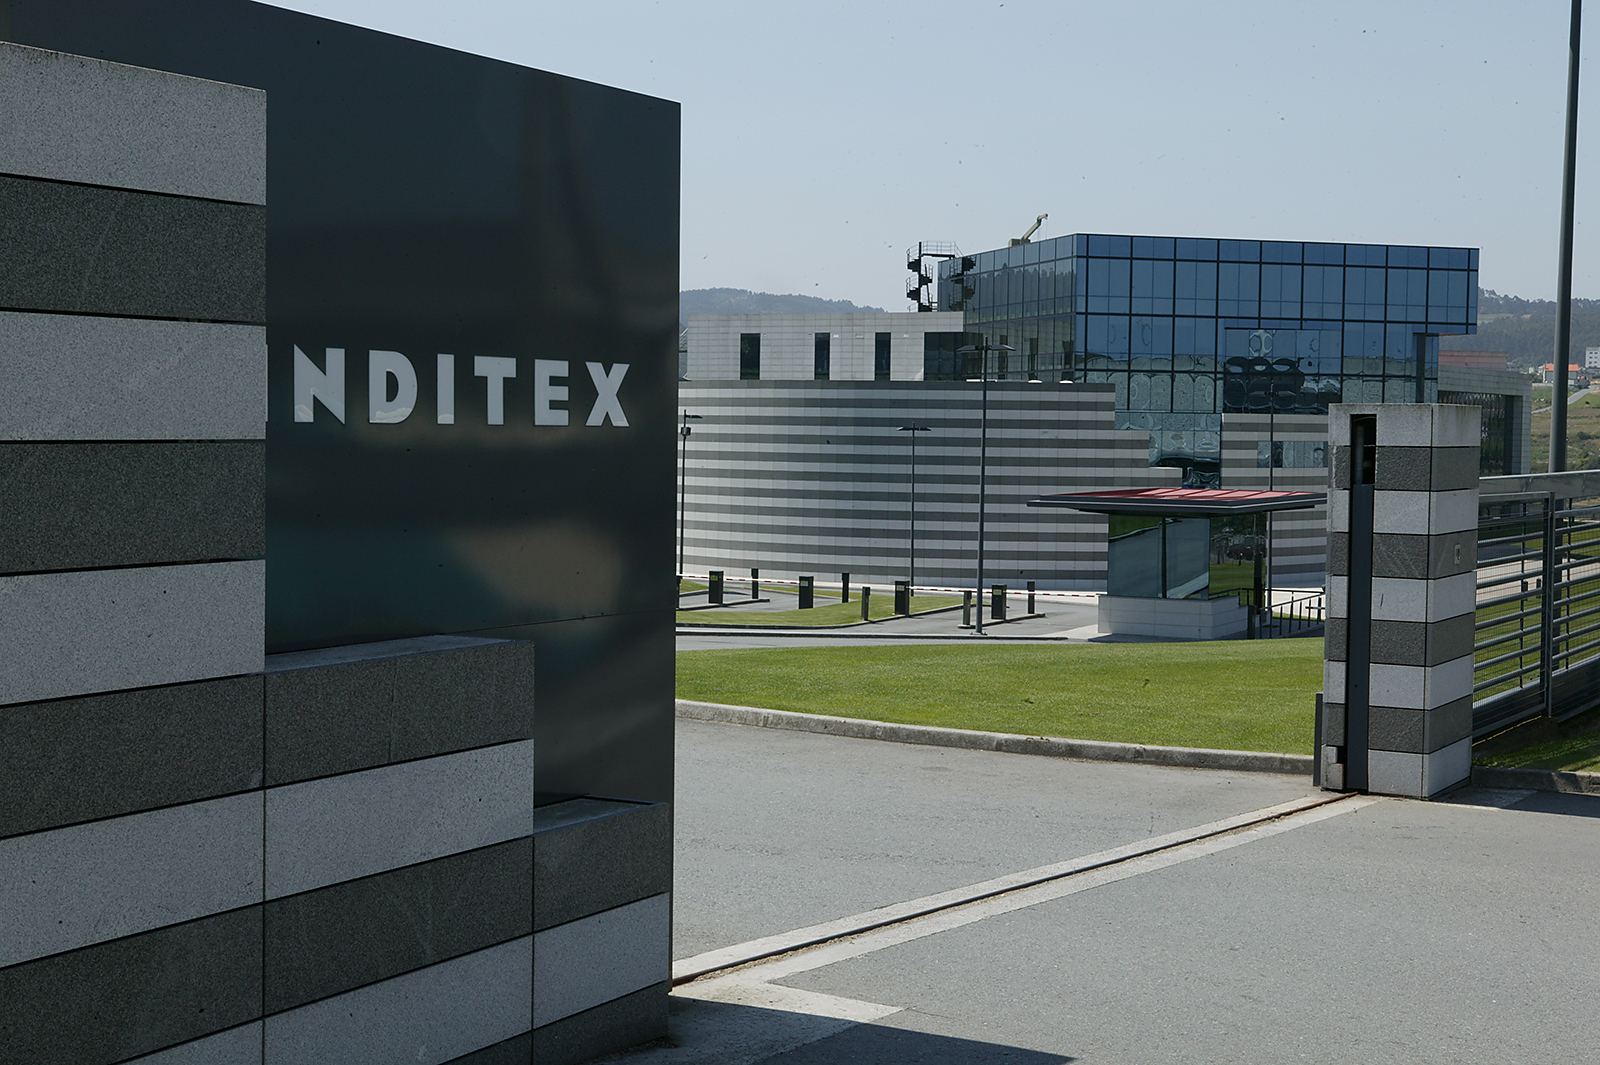 Inditex aporta 8,5 millones de euros a Cáritas apoyar programas de social - Mercado